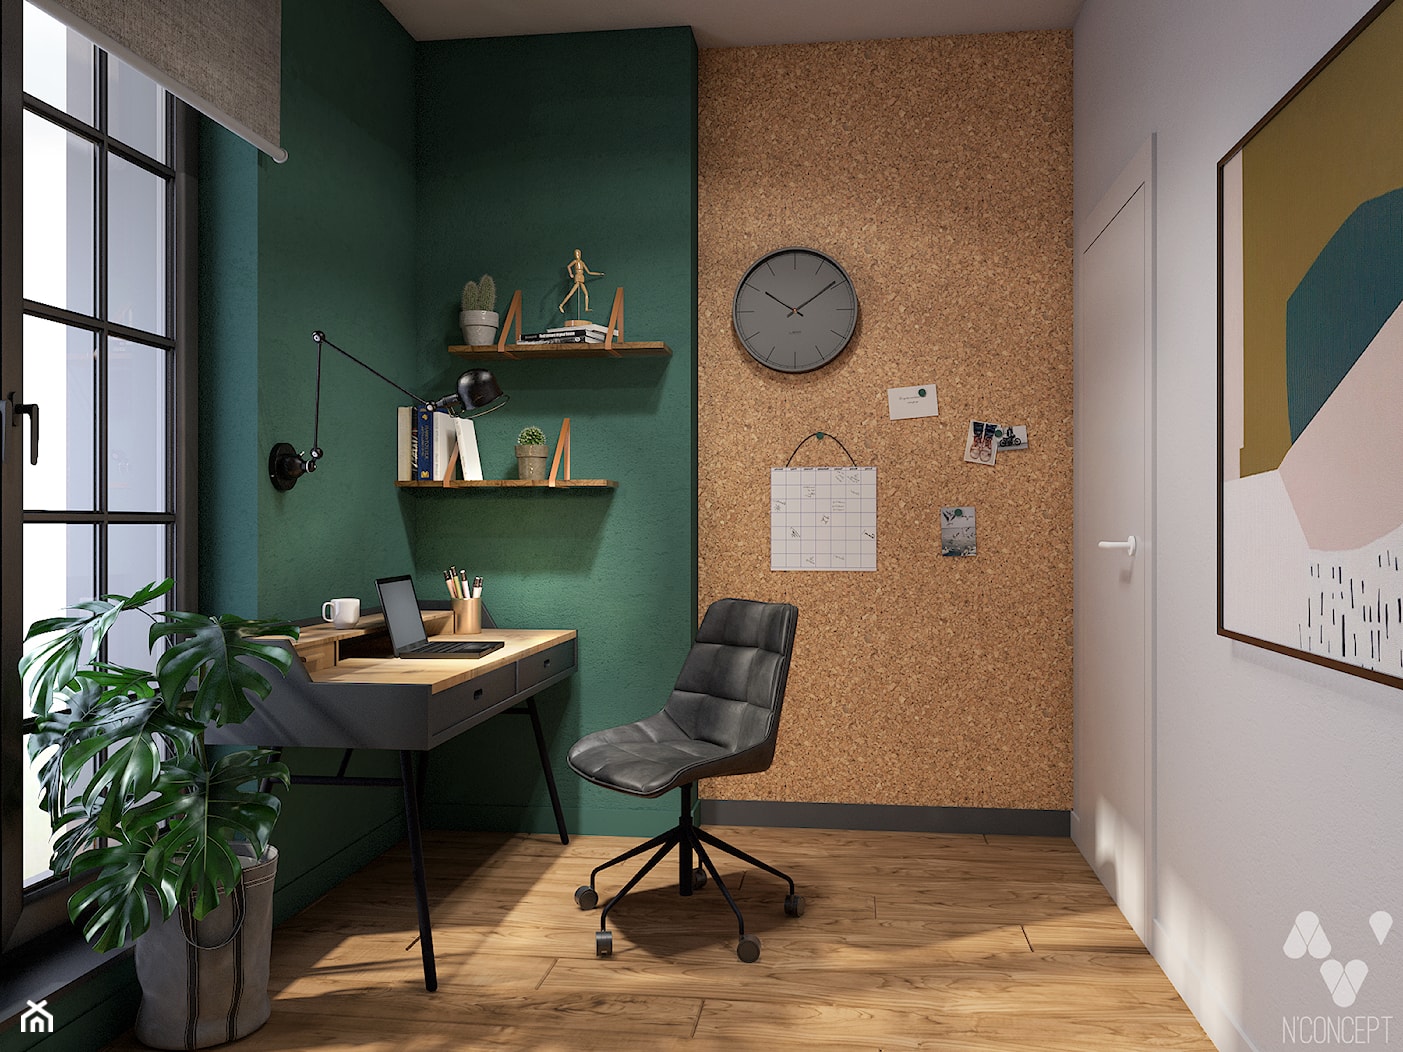 Stary Spichlerz - Średnie w osobnym pomieszczeniu białe zielone biuro, styl nowoczesny - zdjęcie od N'concept - Homebook